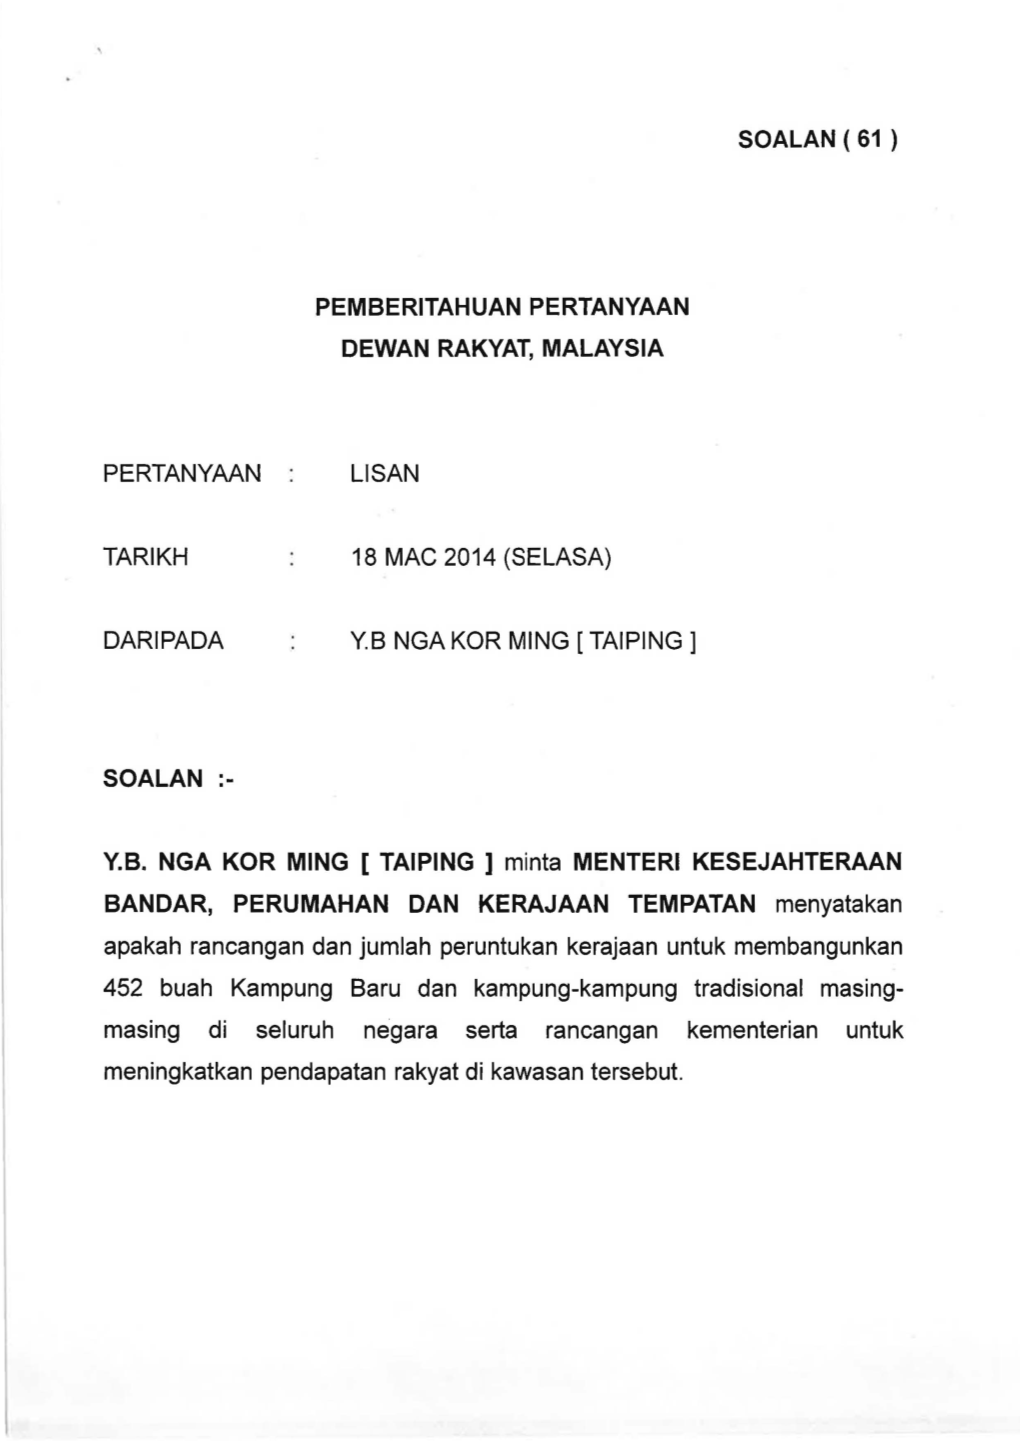 Pertanyaan Tarikh Daripada So Alan Pemberitahuan Pertanyaan Dewan Rakyat, Malaysia Lisan 18 Mac 2014 (Selasa) Y.B Nga Kor Ming [